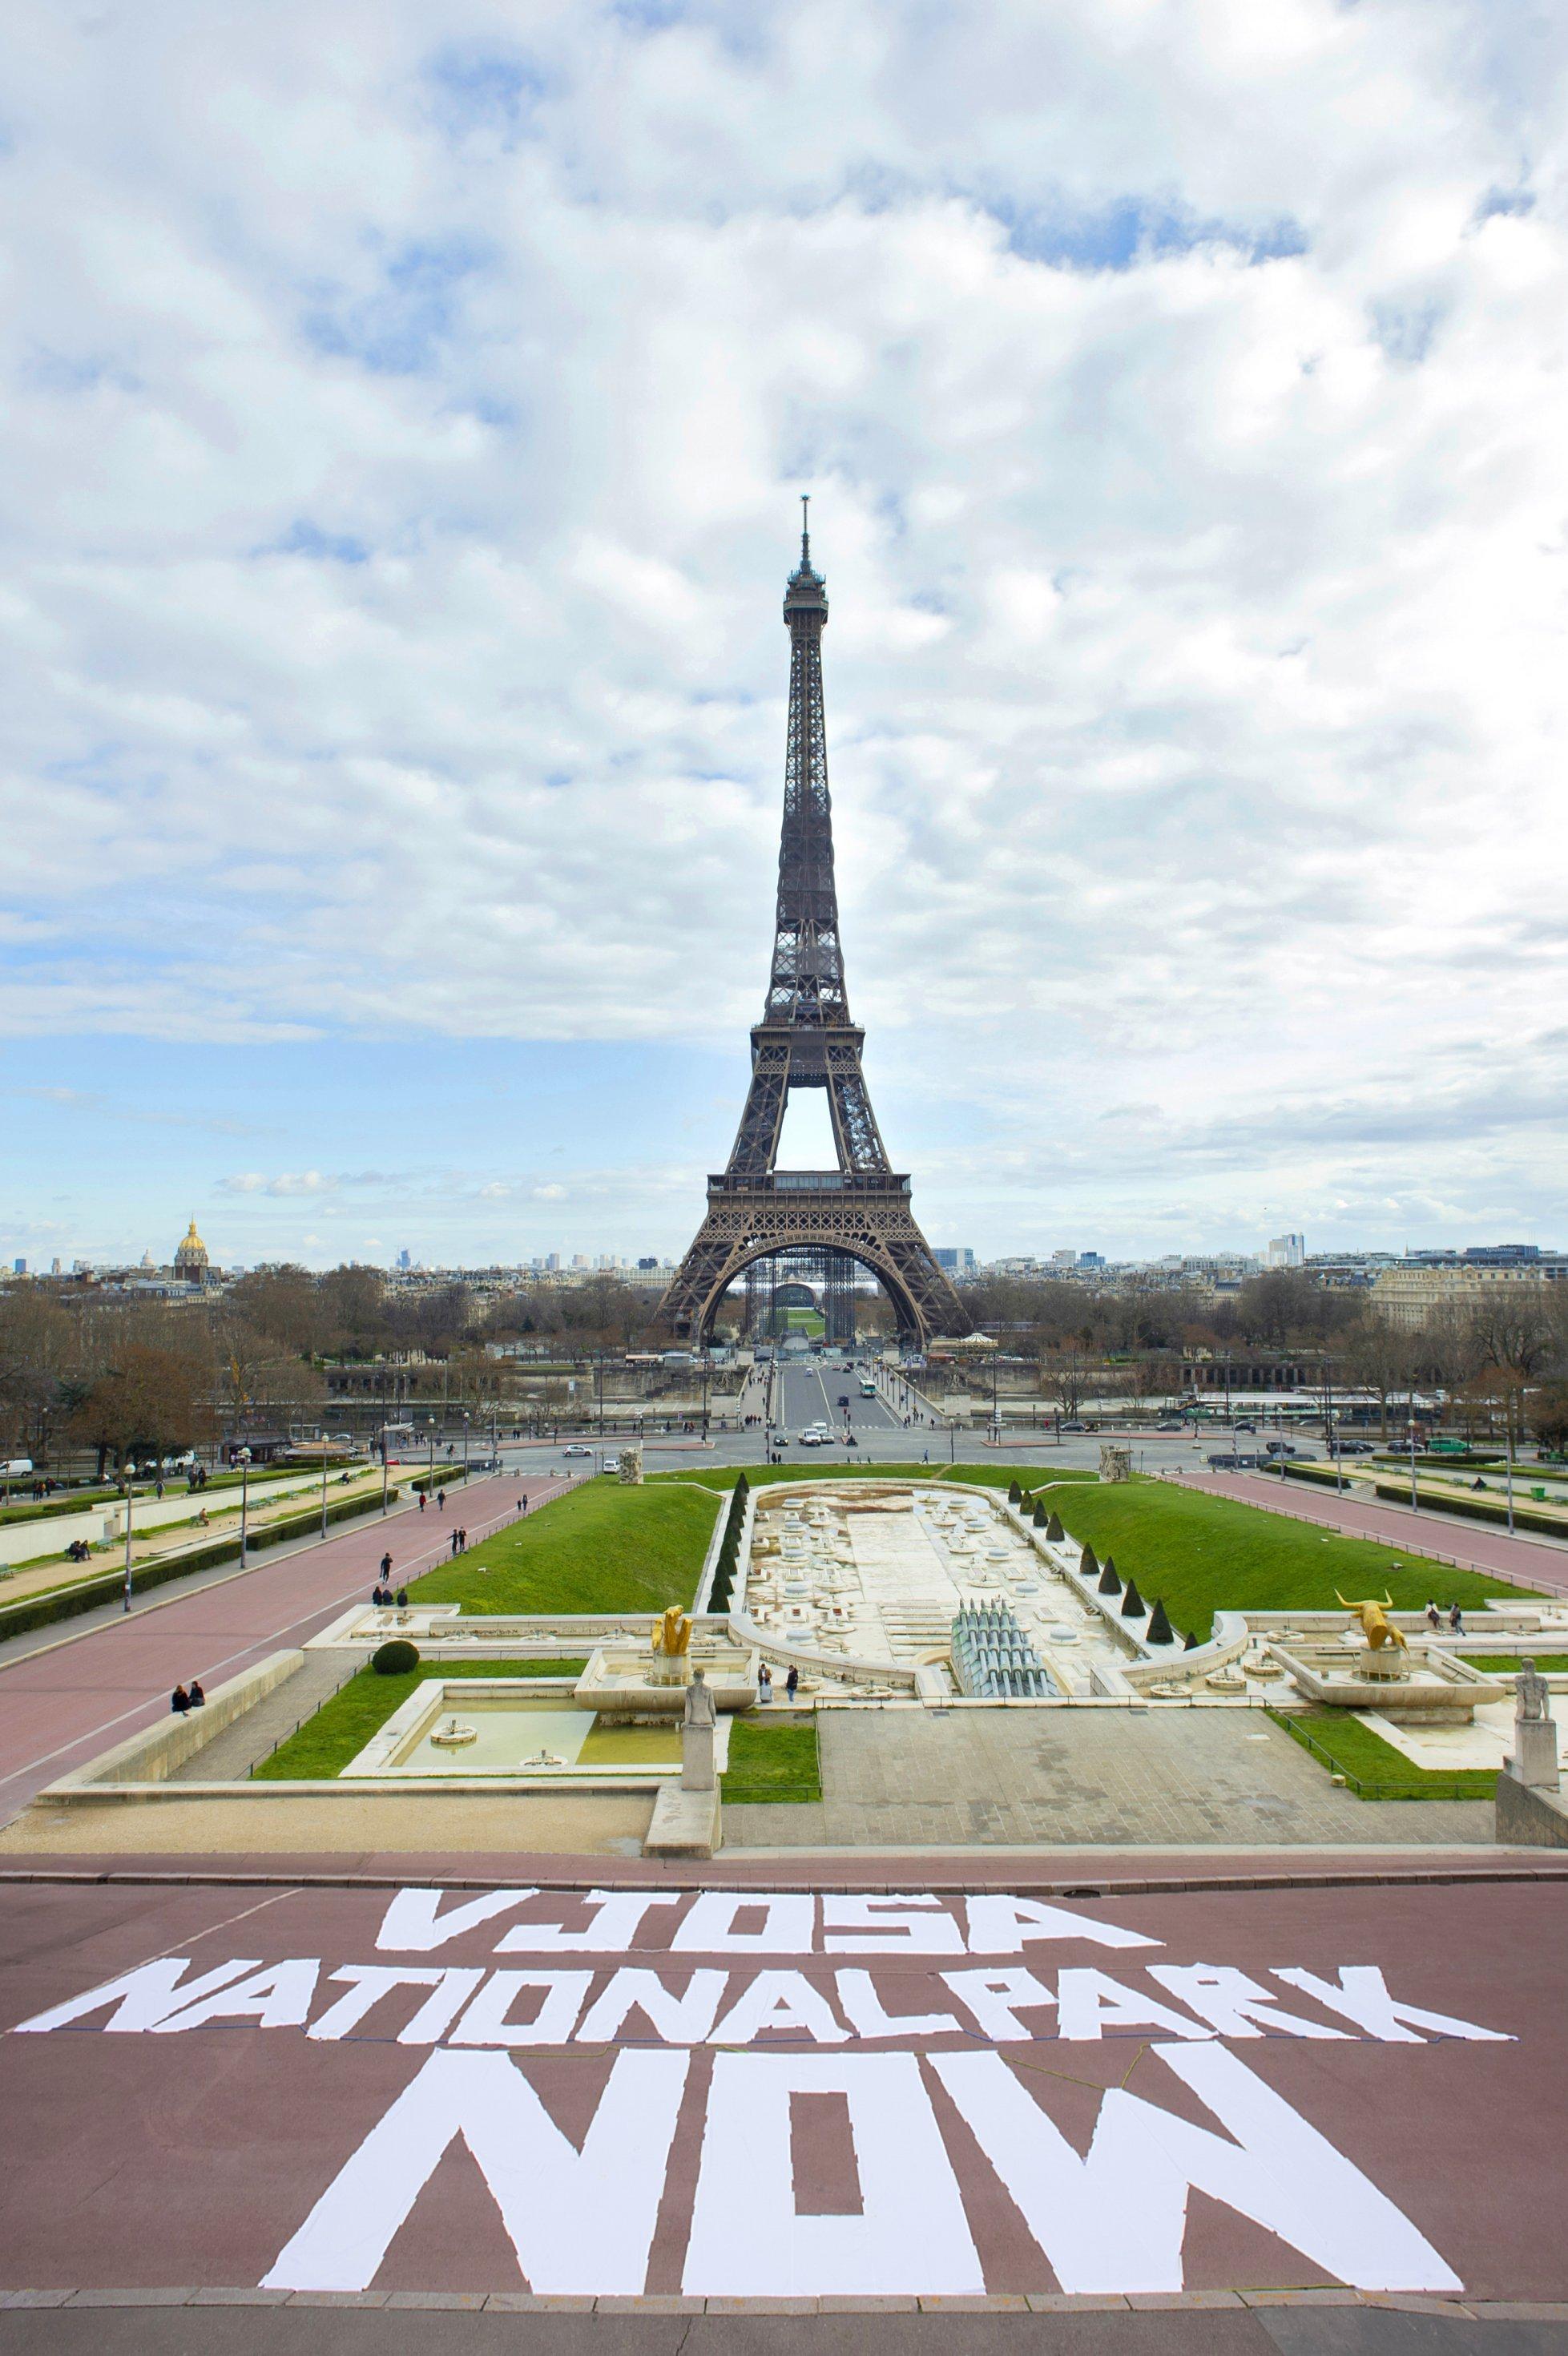 Weißer Schriftzug auf einem roten Platz, dahinter dem Eiffelturm, blauer Himmel mit Wolken